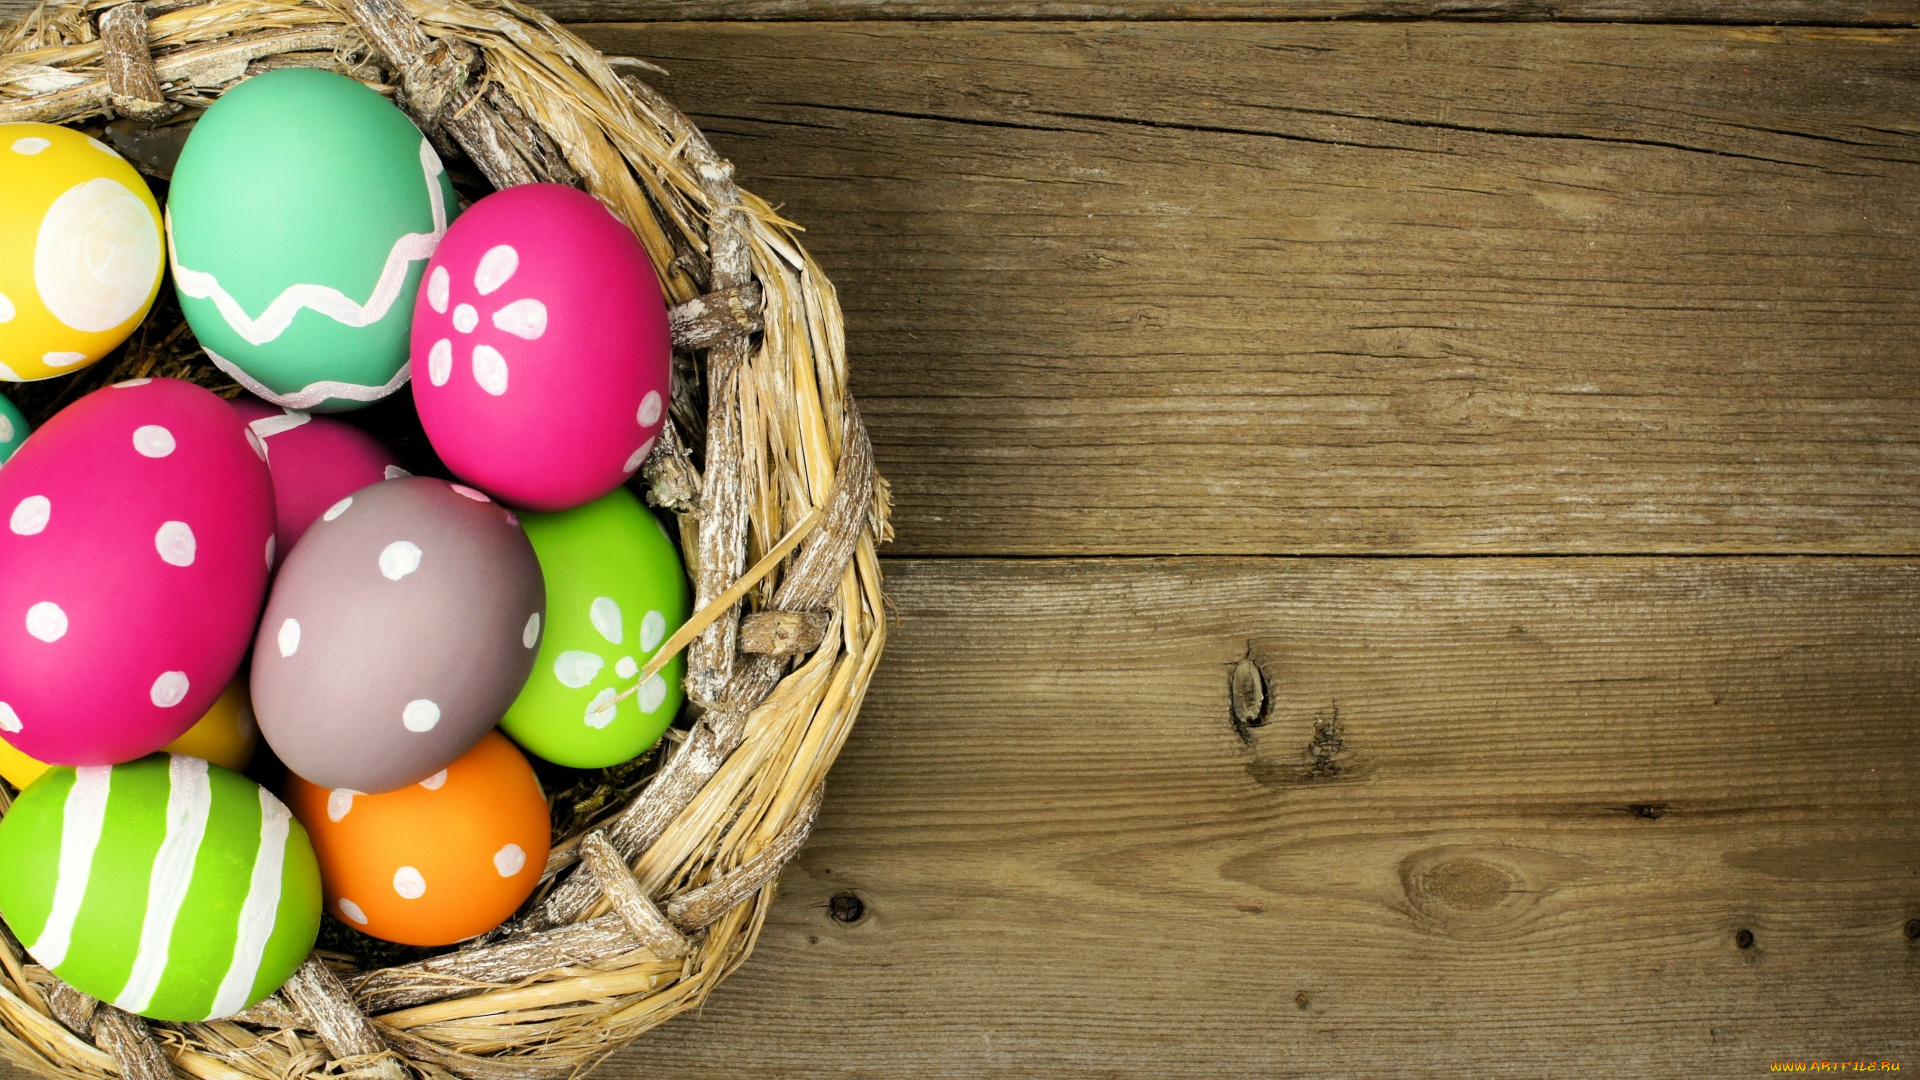 праздничные, пасха, яйца, holiday, easter, spring, wood, happy, eggs, colorful